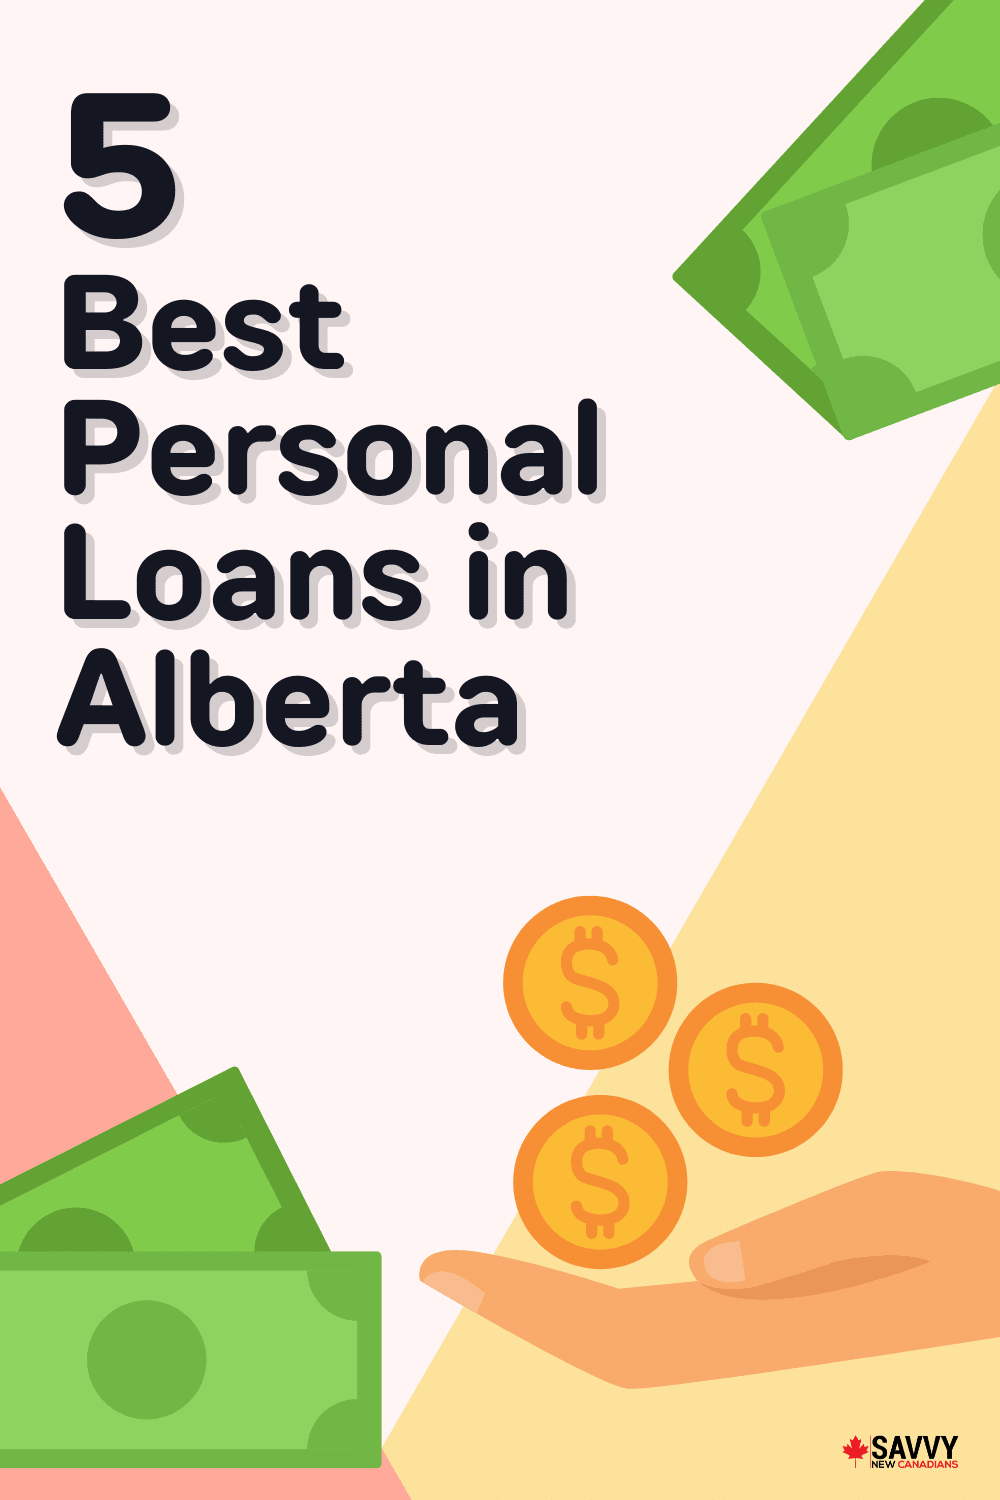 5 Best Personal Loans in Alberta in Jul 2022